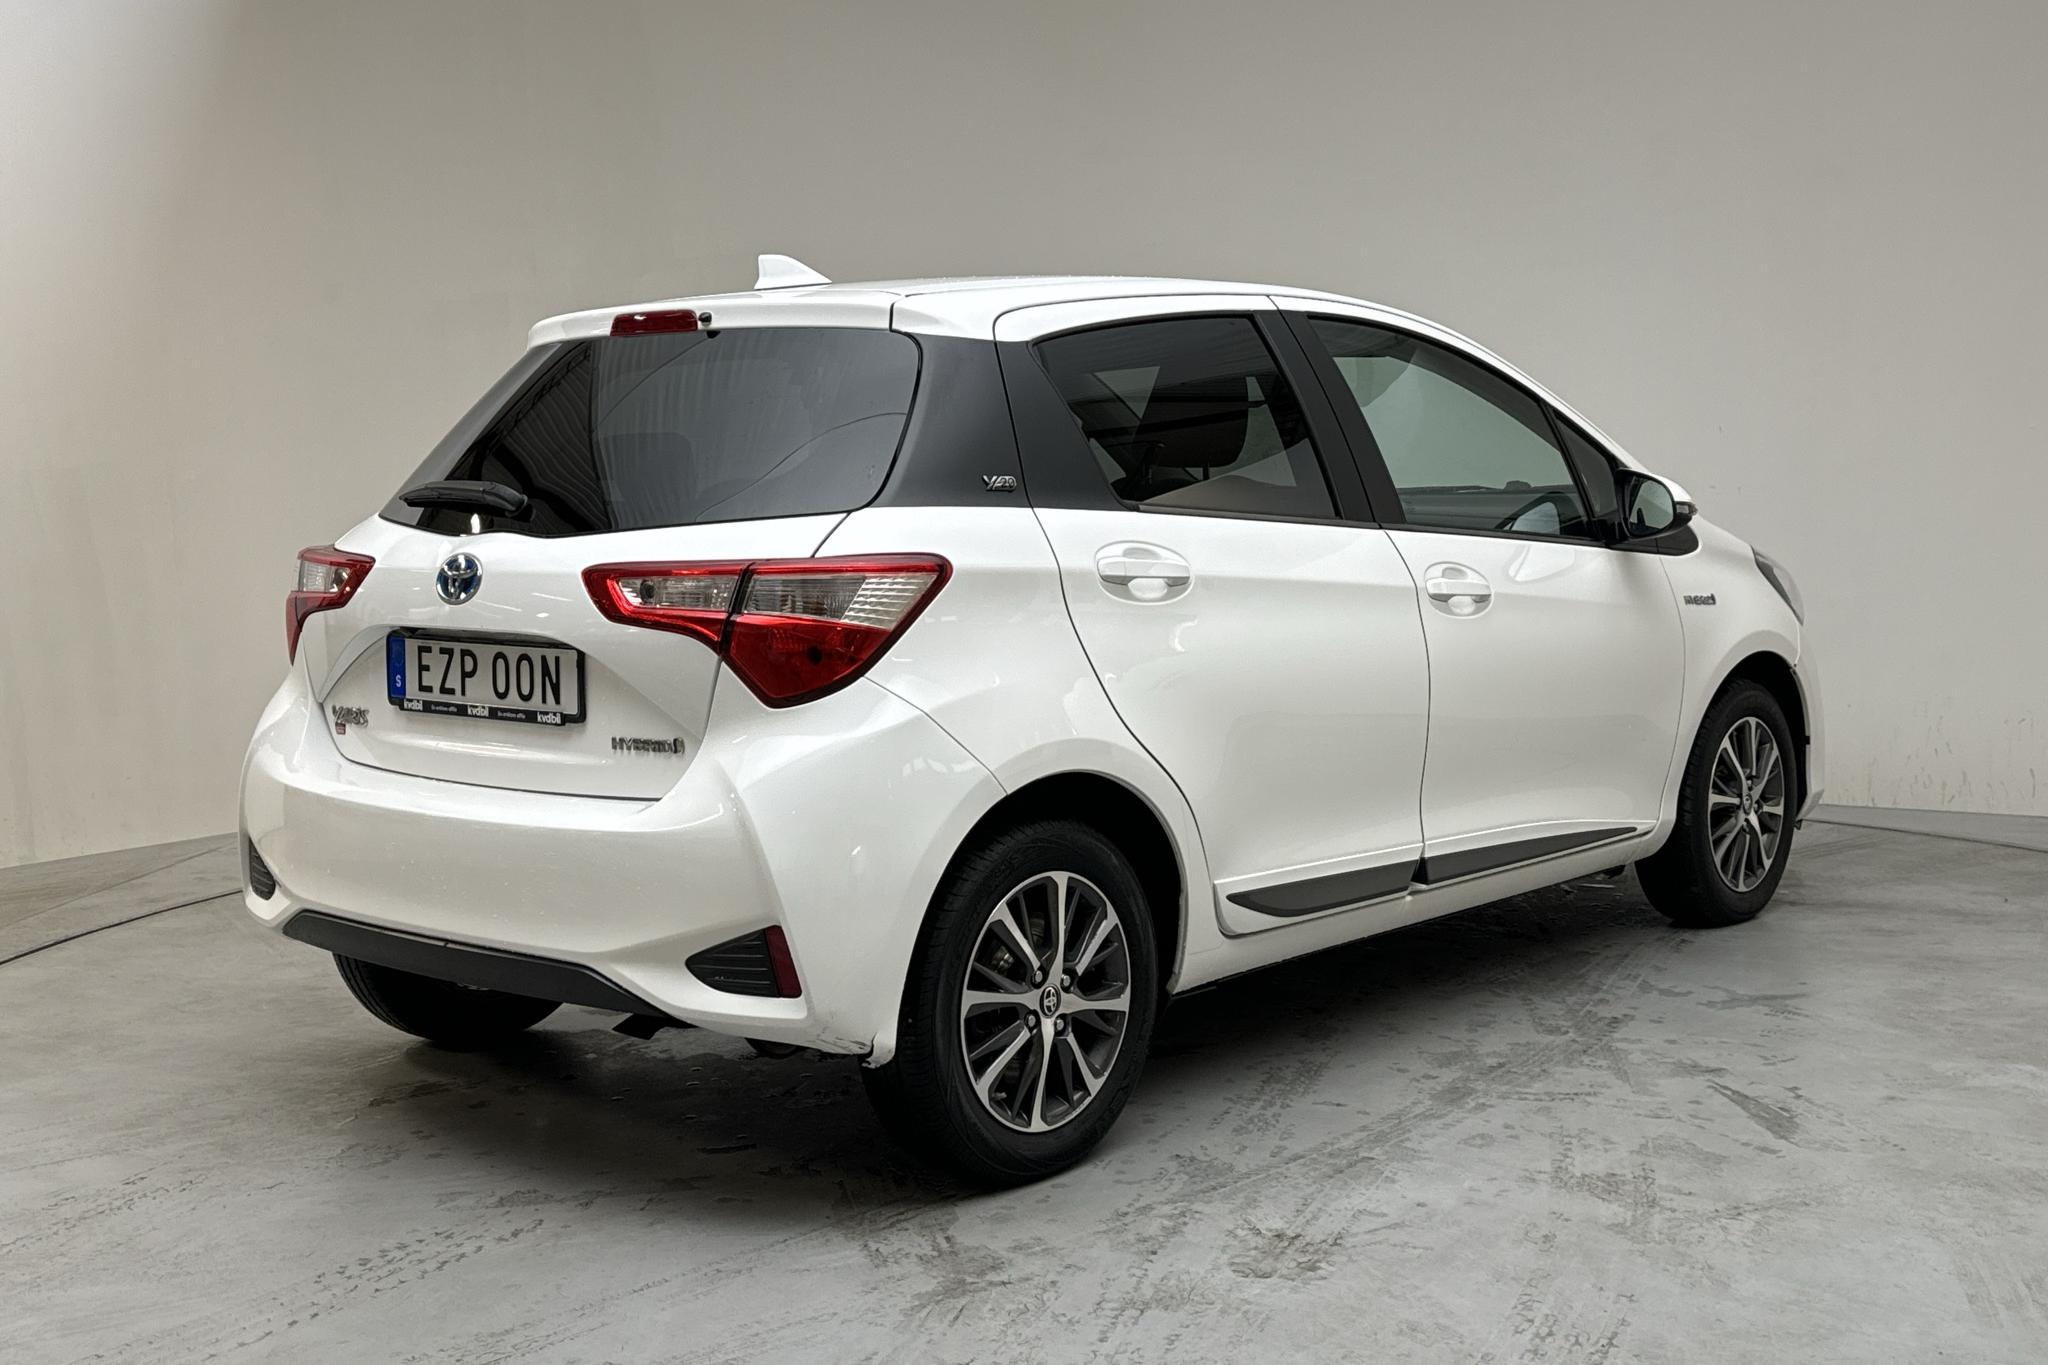 Toyota Yaris 1.5 Hybrid 5dr (101hk) - 124 800 km - Automaattinen - valkoinen - 2019